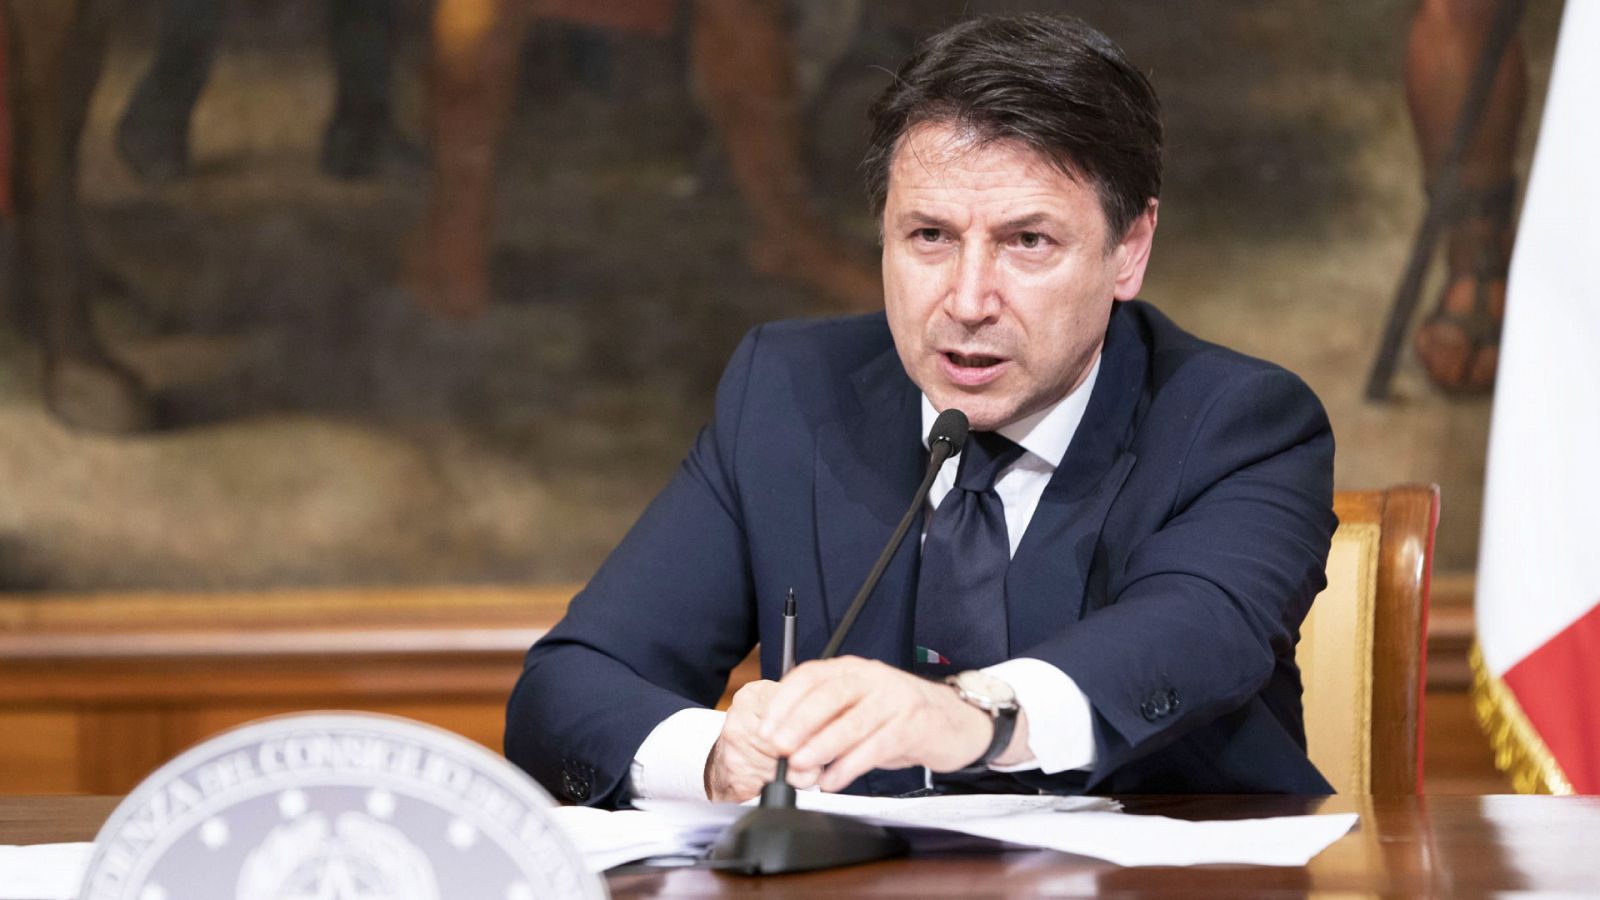 24 horas - Italia inyectará 400.000 millones de euros en la economía - Escuchar ahora